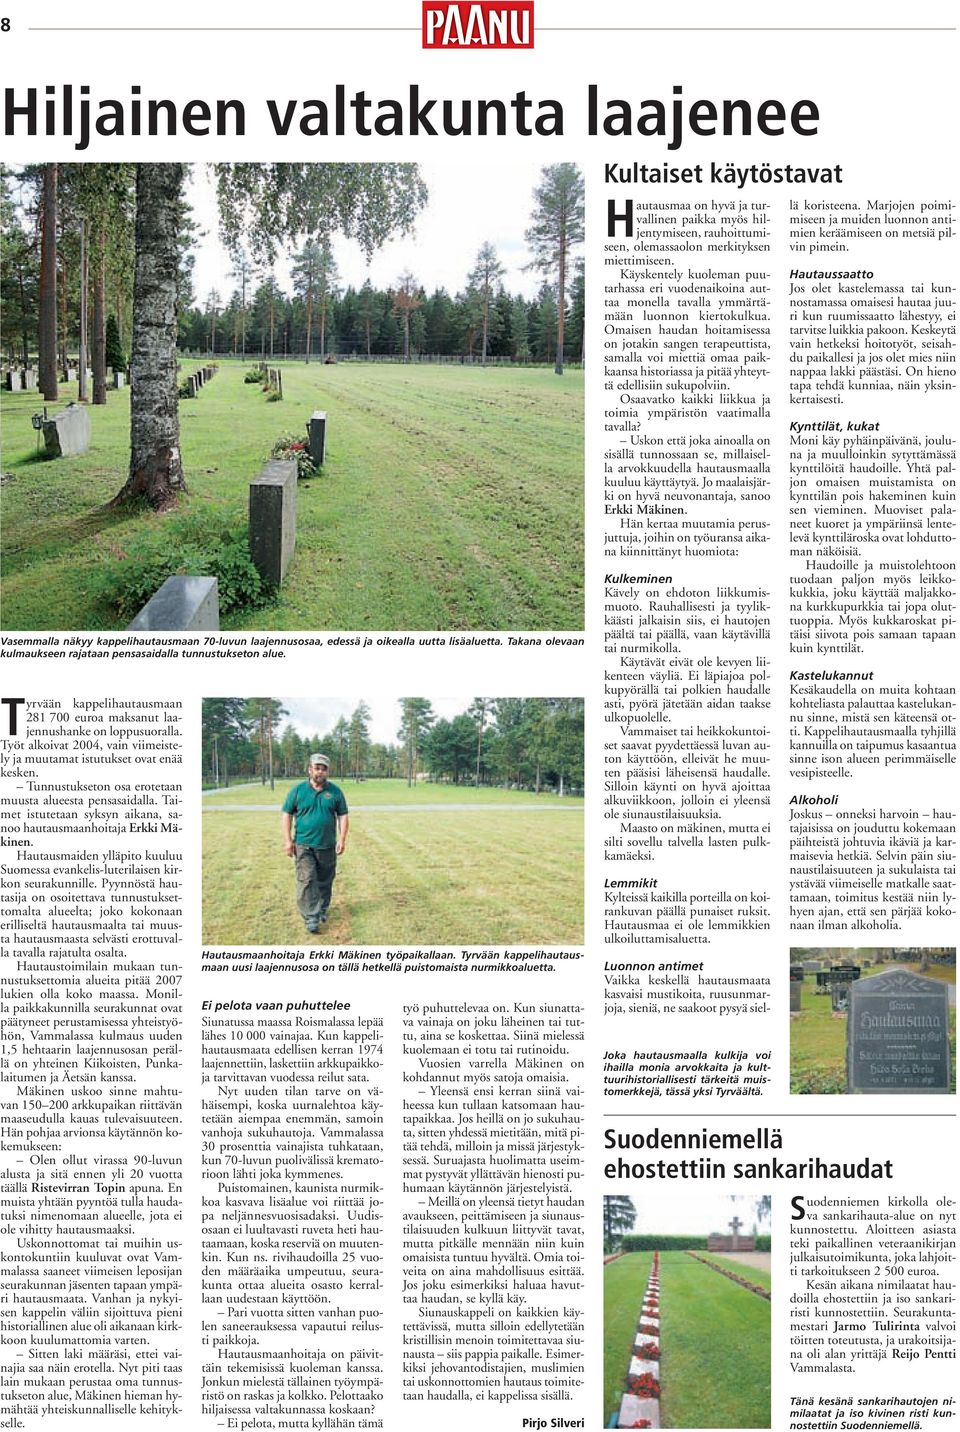 Tunnustukseton osa erotetaan muusta alueesta pensasaidalla. Taimet istutetaan syksyn aikana, sanoo hautausmaanhoitaja Erkki Mäkinen.